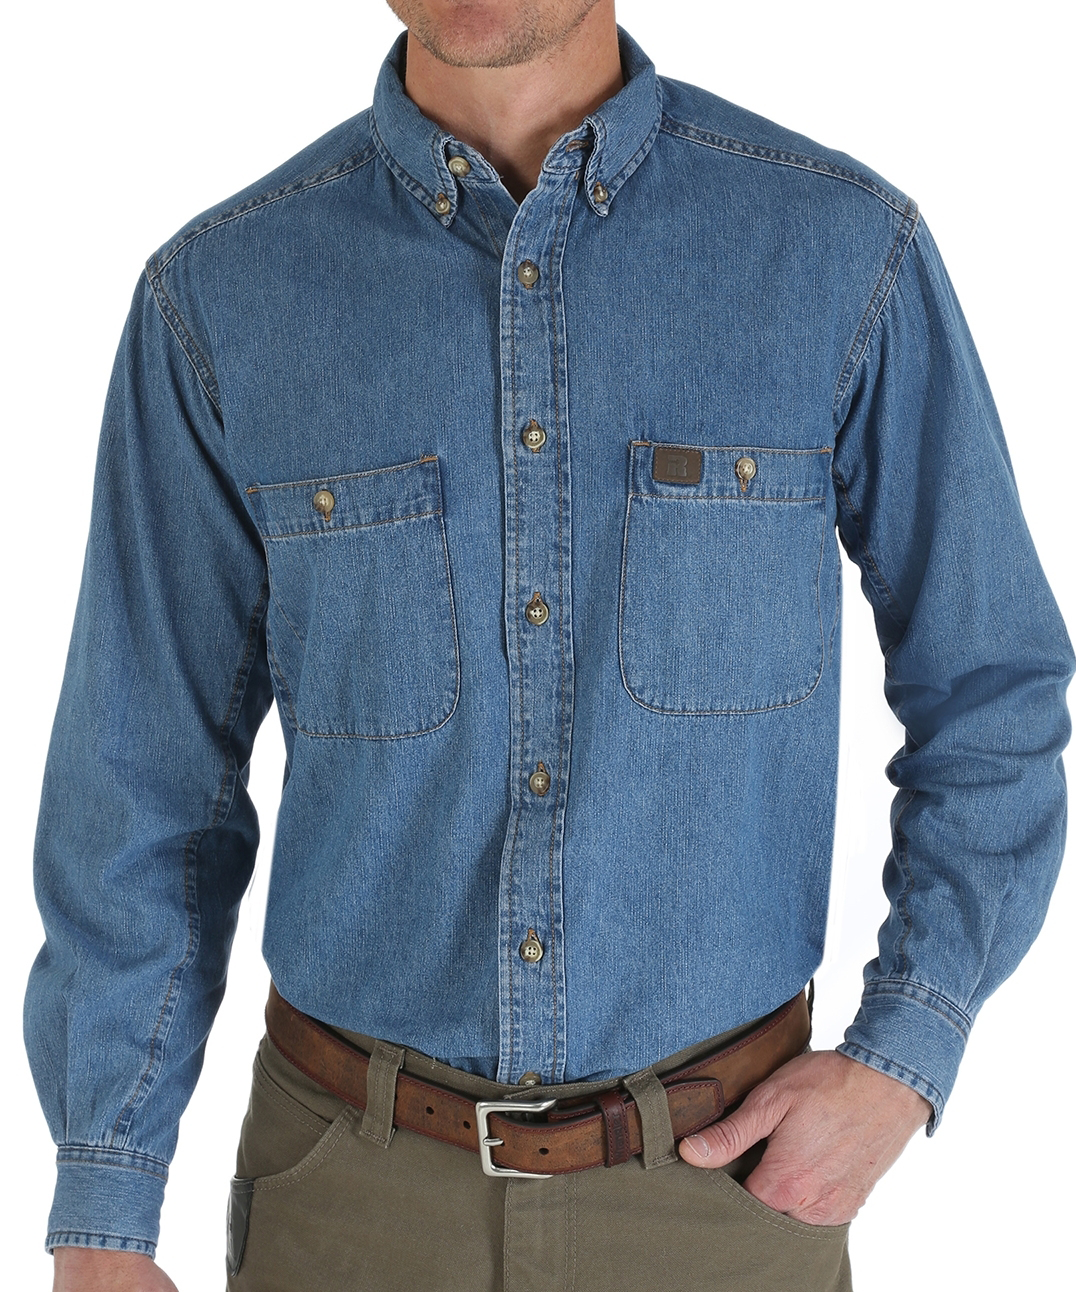 Wrangler RIGGS Workwear Denim Long-Sleeve Work Shirt for Men